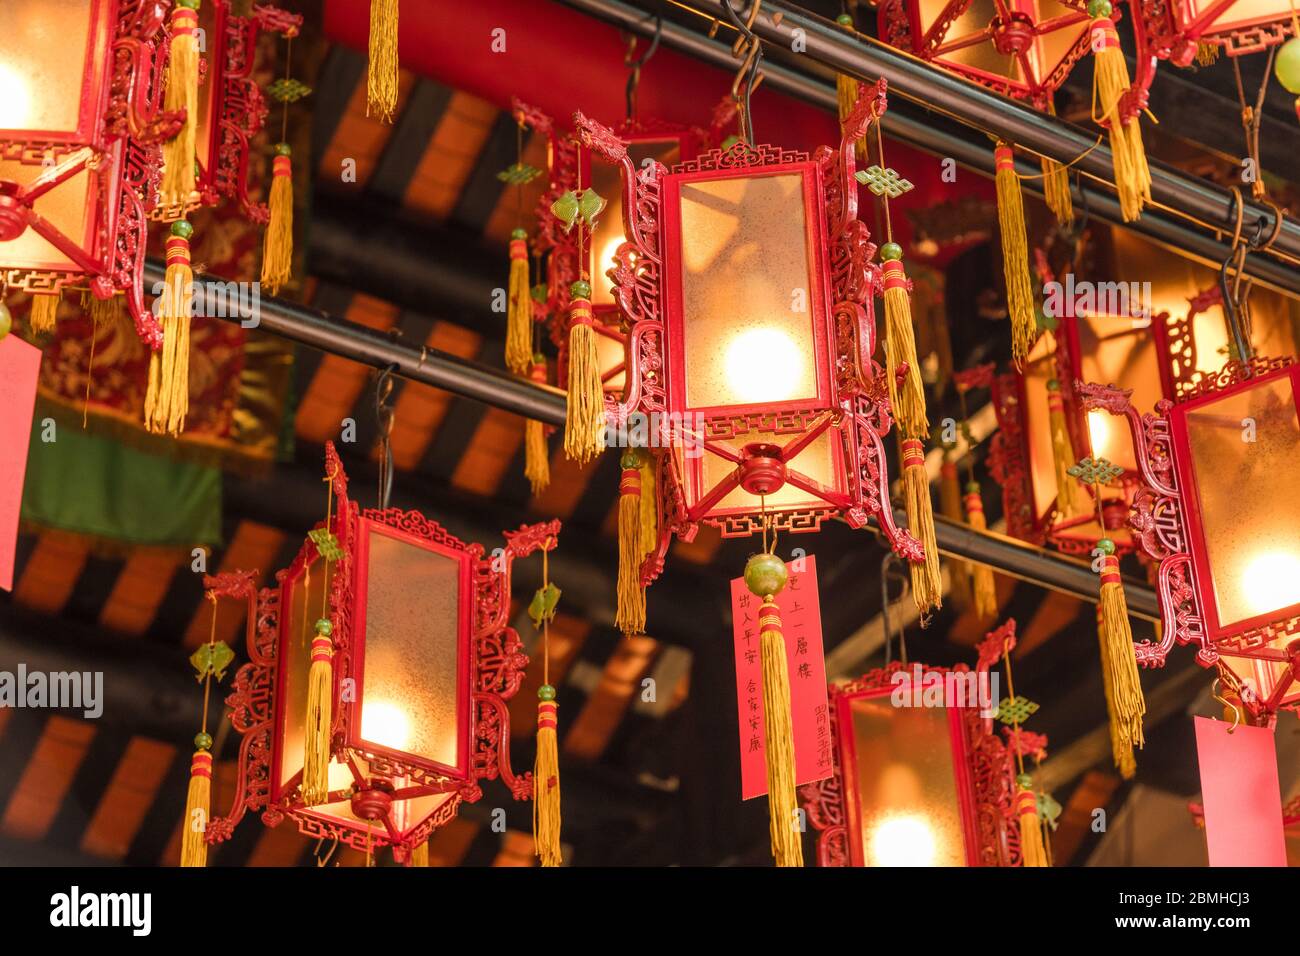 Lanternes rouges accrochées au toit d'un temple bouddhiste dans le temple Tin Hau de Yaumatei, Hong Kong Banque D'Images